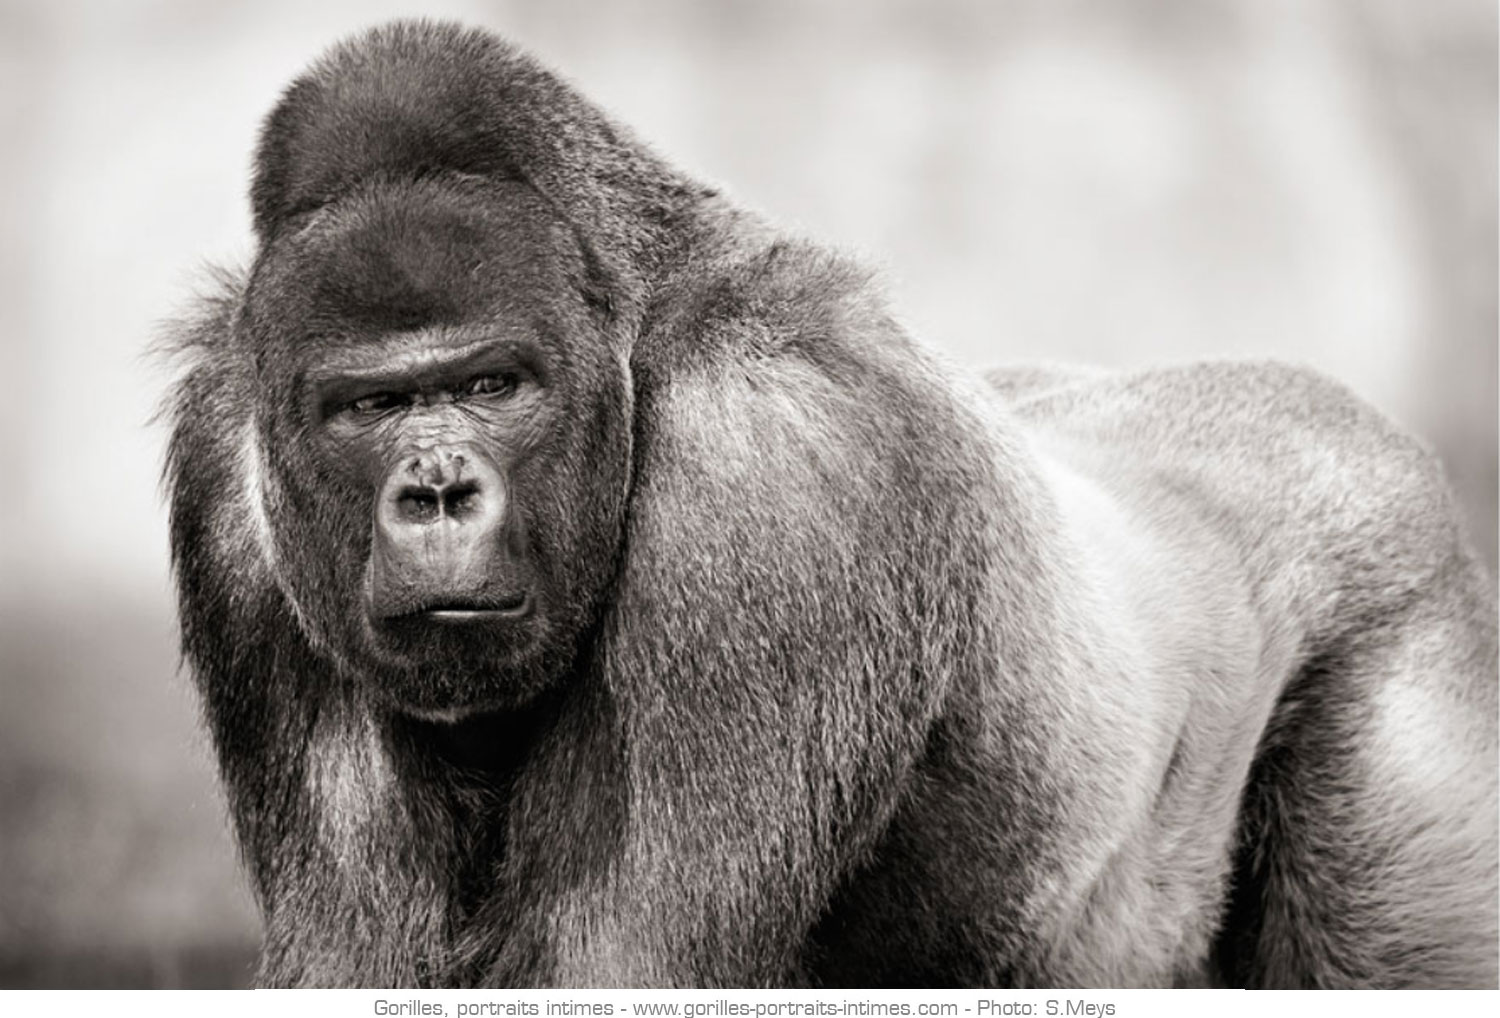 Mâle dominant aussi appelé dos argenté chez les gorilles